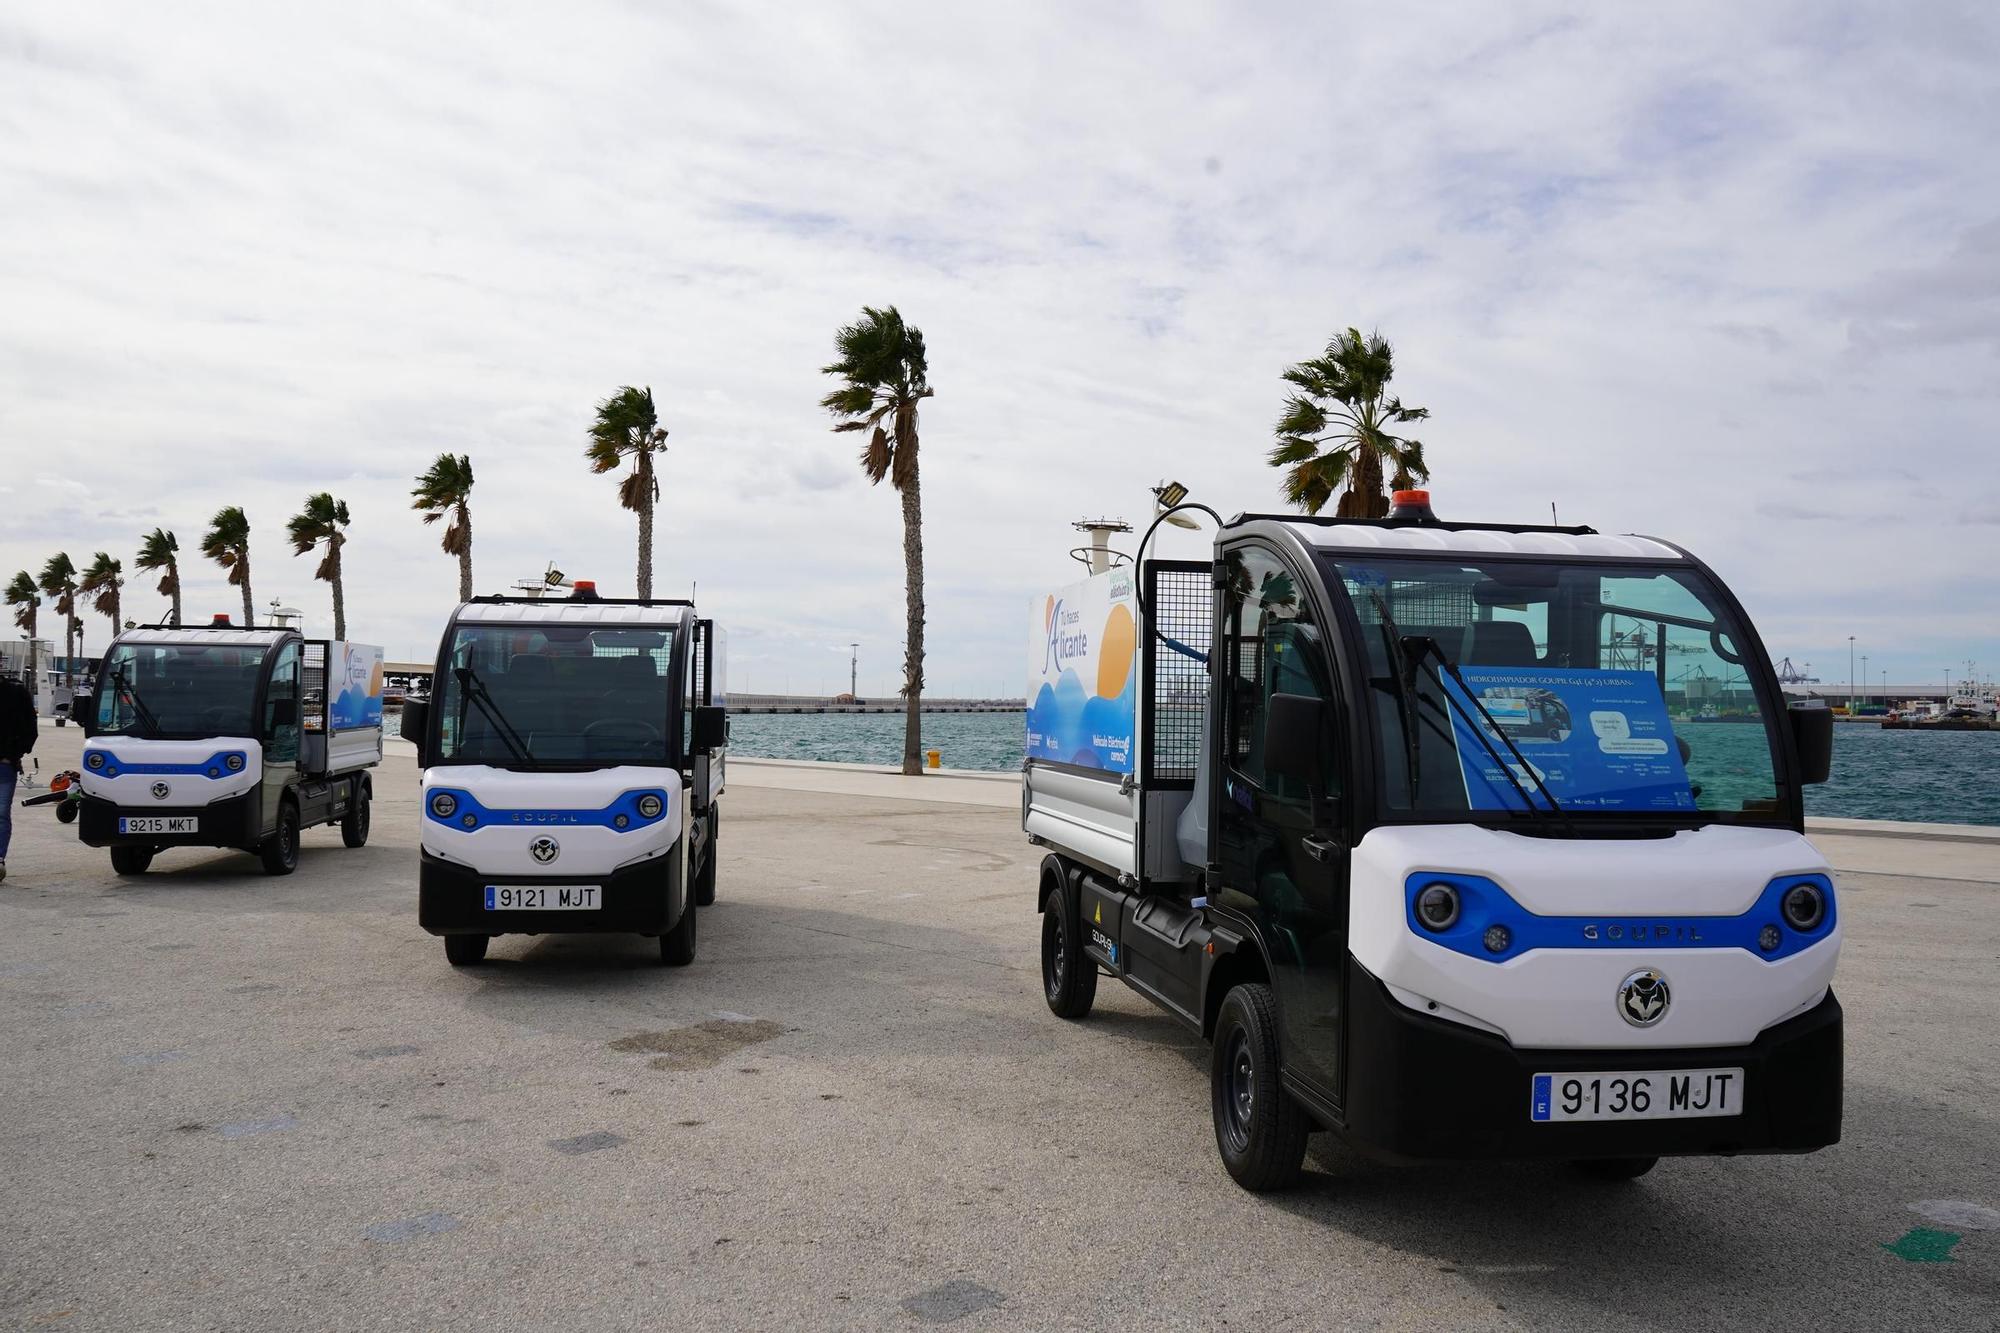 Presentación de la nueva flota de vehículos de limpieza de Netial y el Ayuntamiento de Alicante.